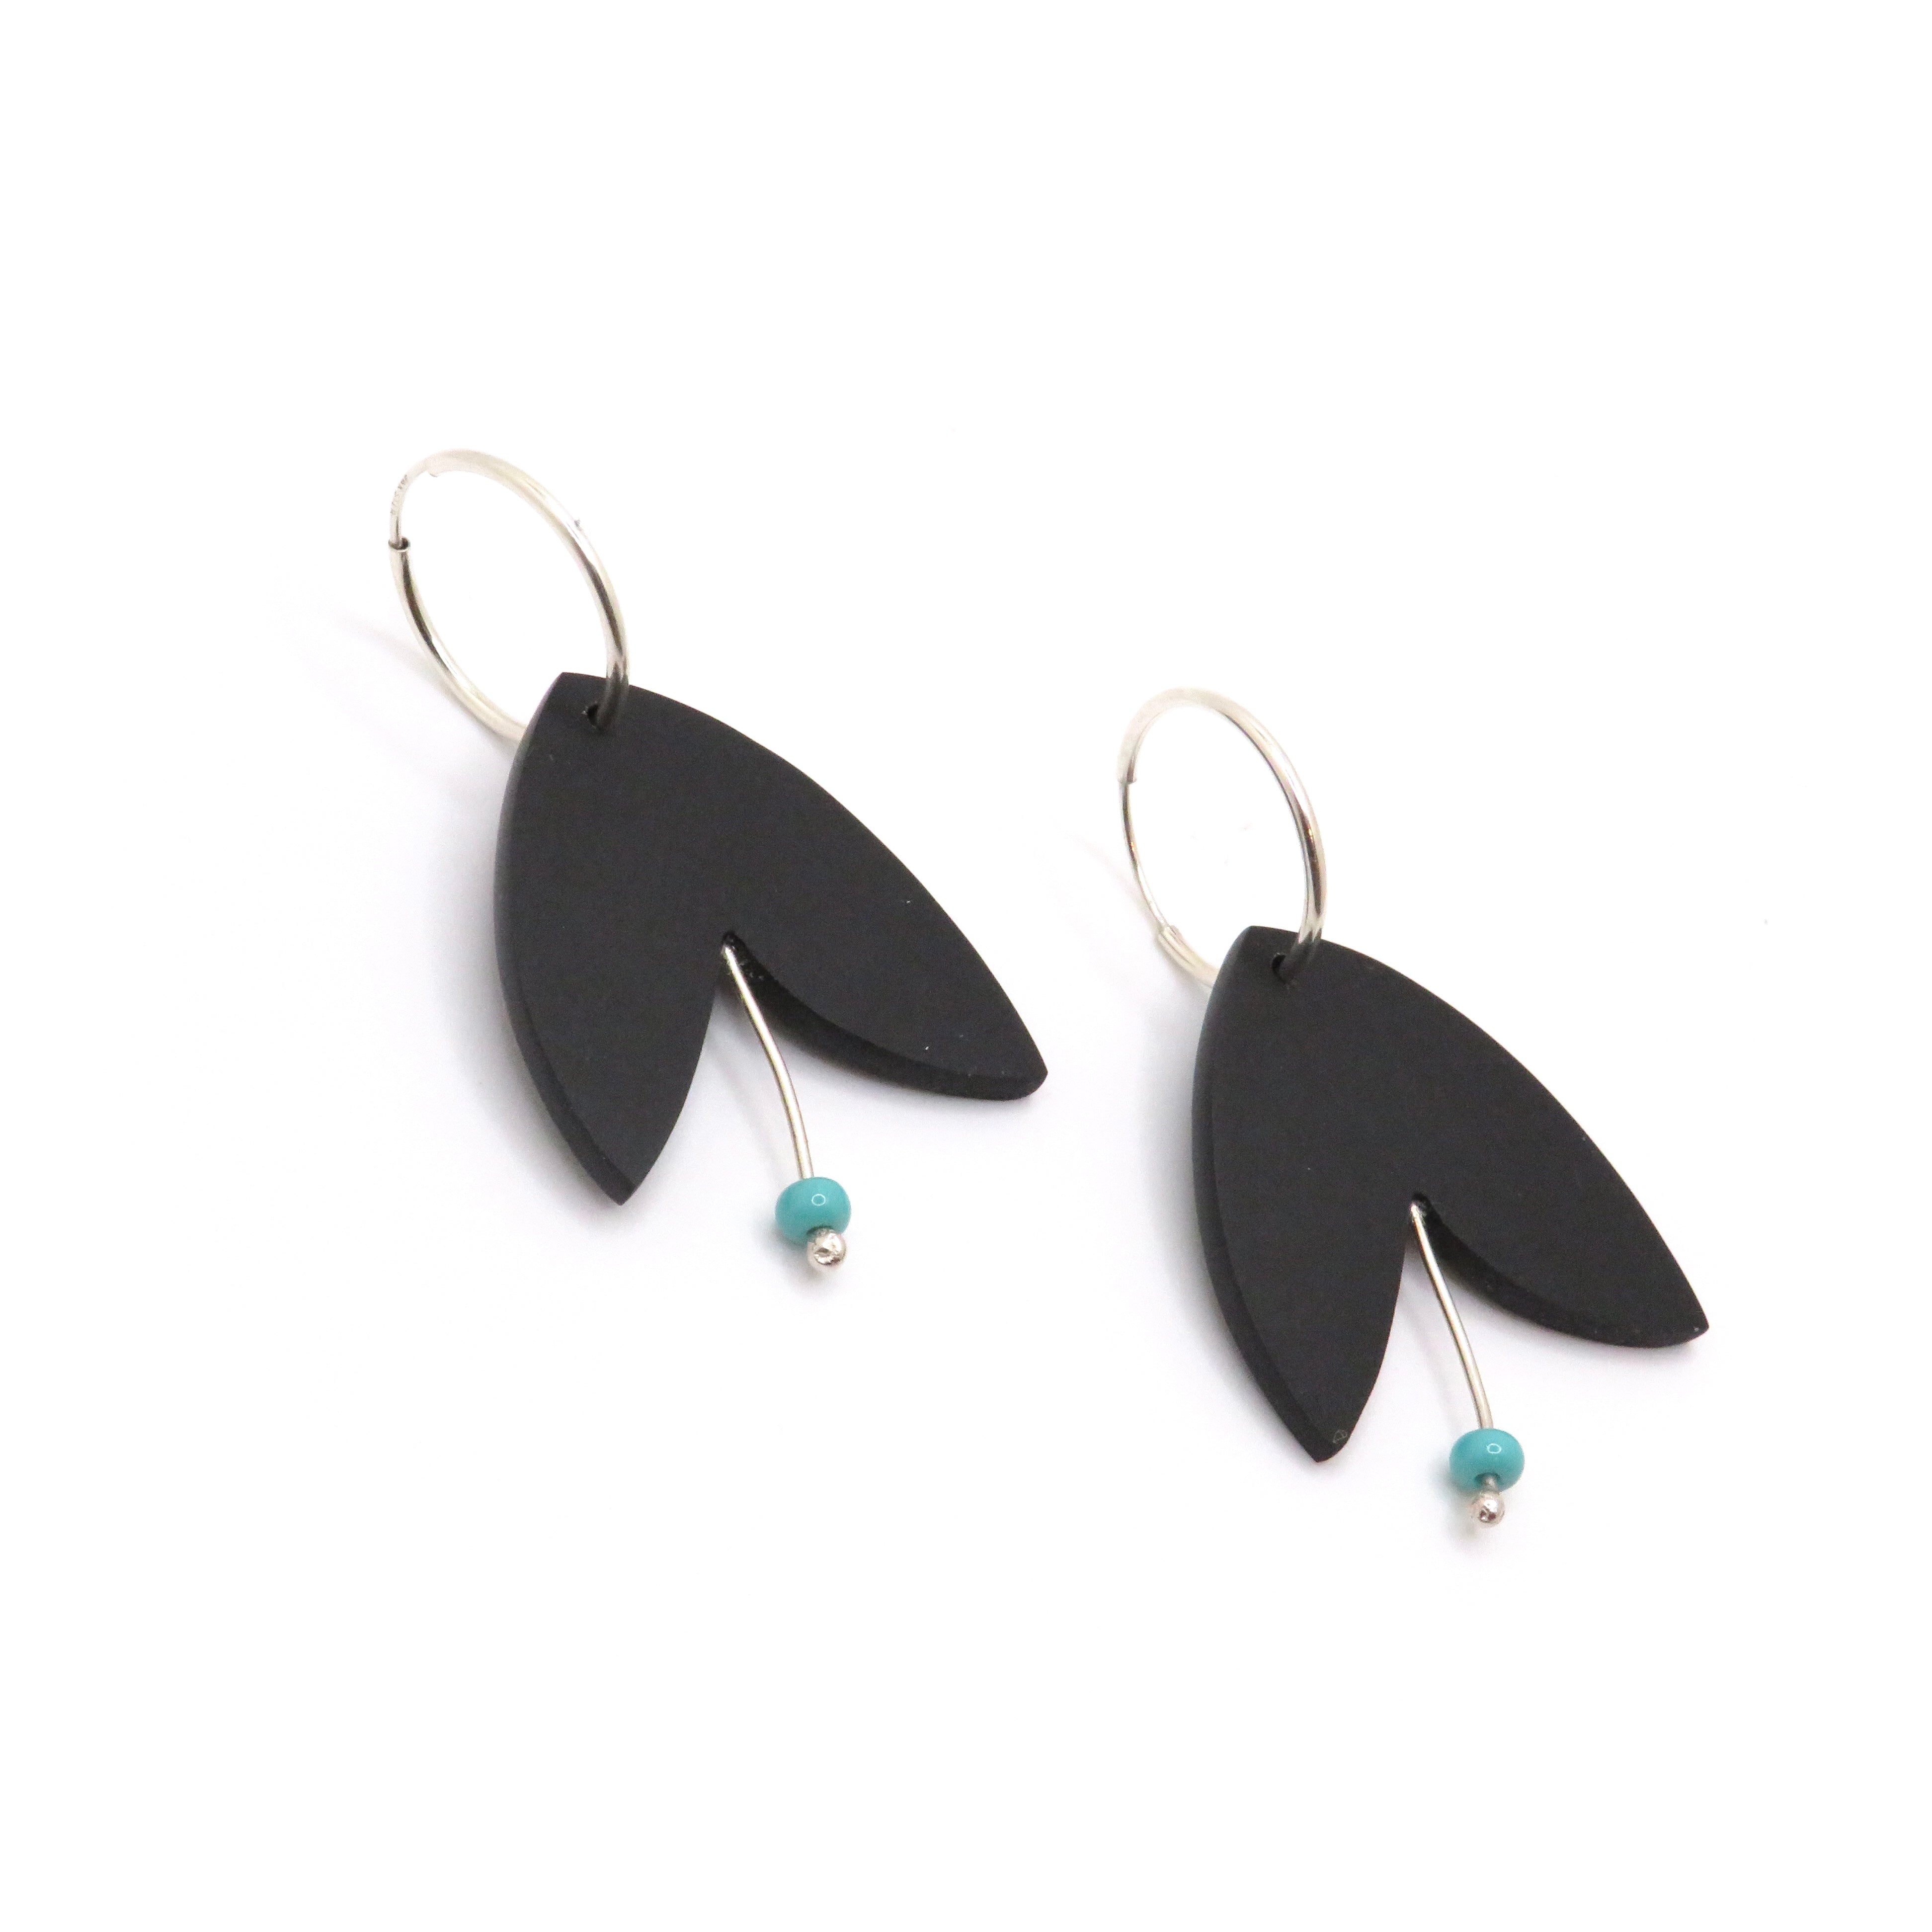 Hoop earrings with charm